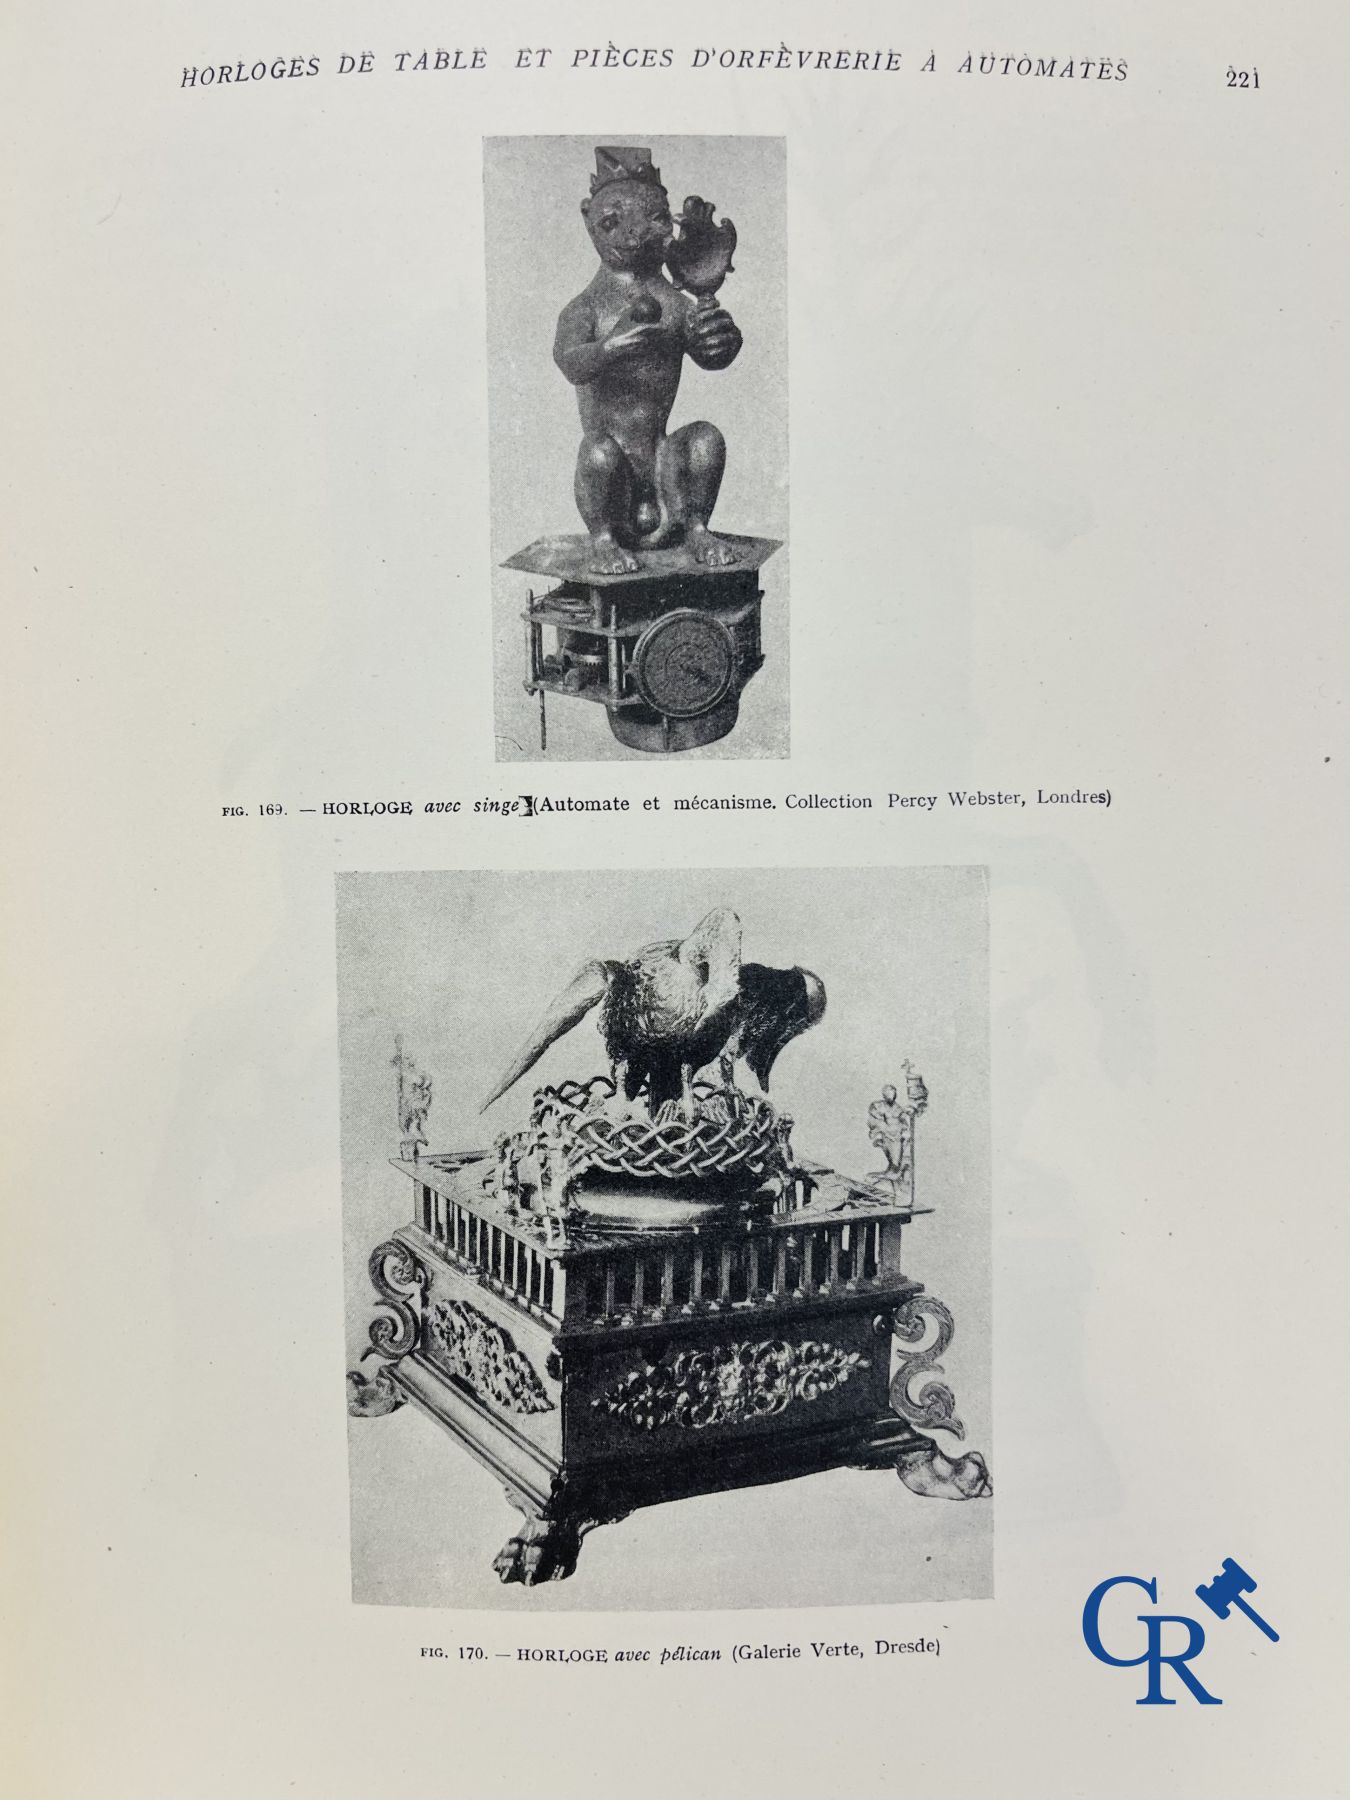 Automates. Rare edition of "Le monde des automates." Alfred Chapuis et Edouard Gélis. Paris 1928. - Image 15 of 26